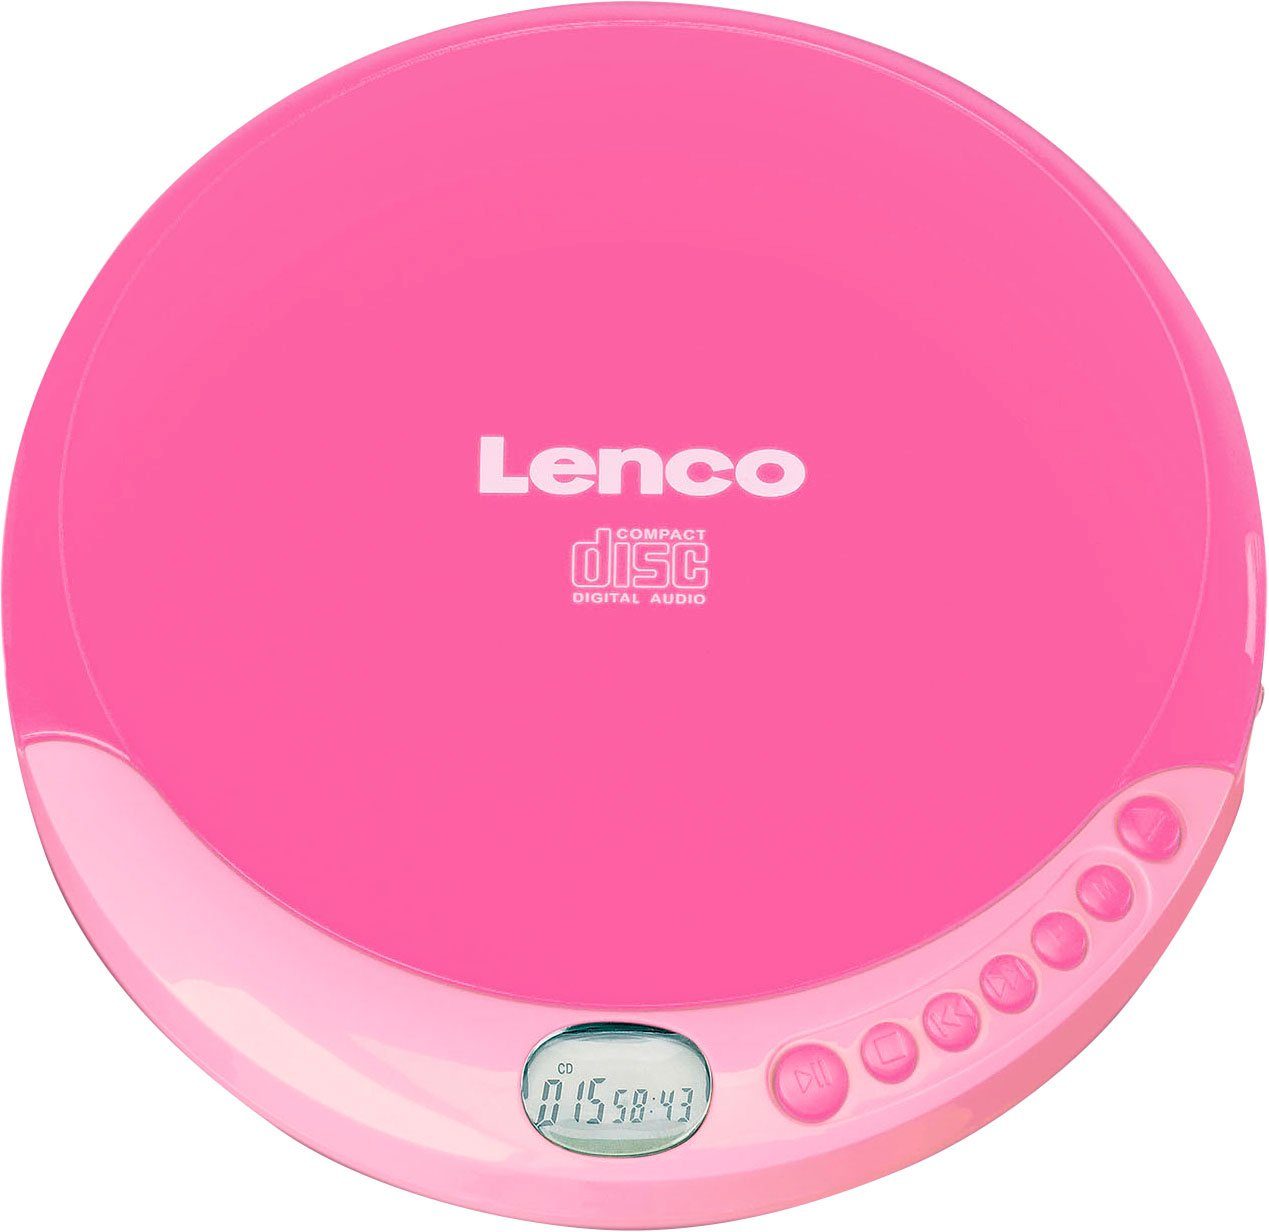 rosa CD-011 CD-Player Lenco